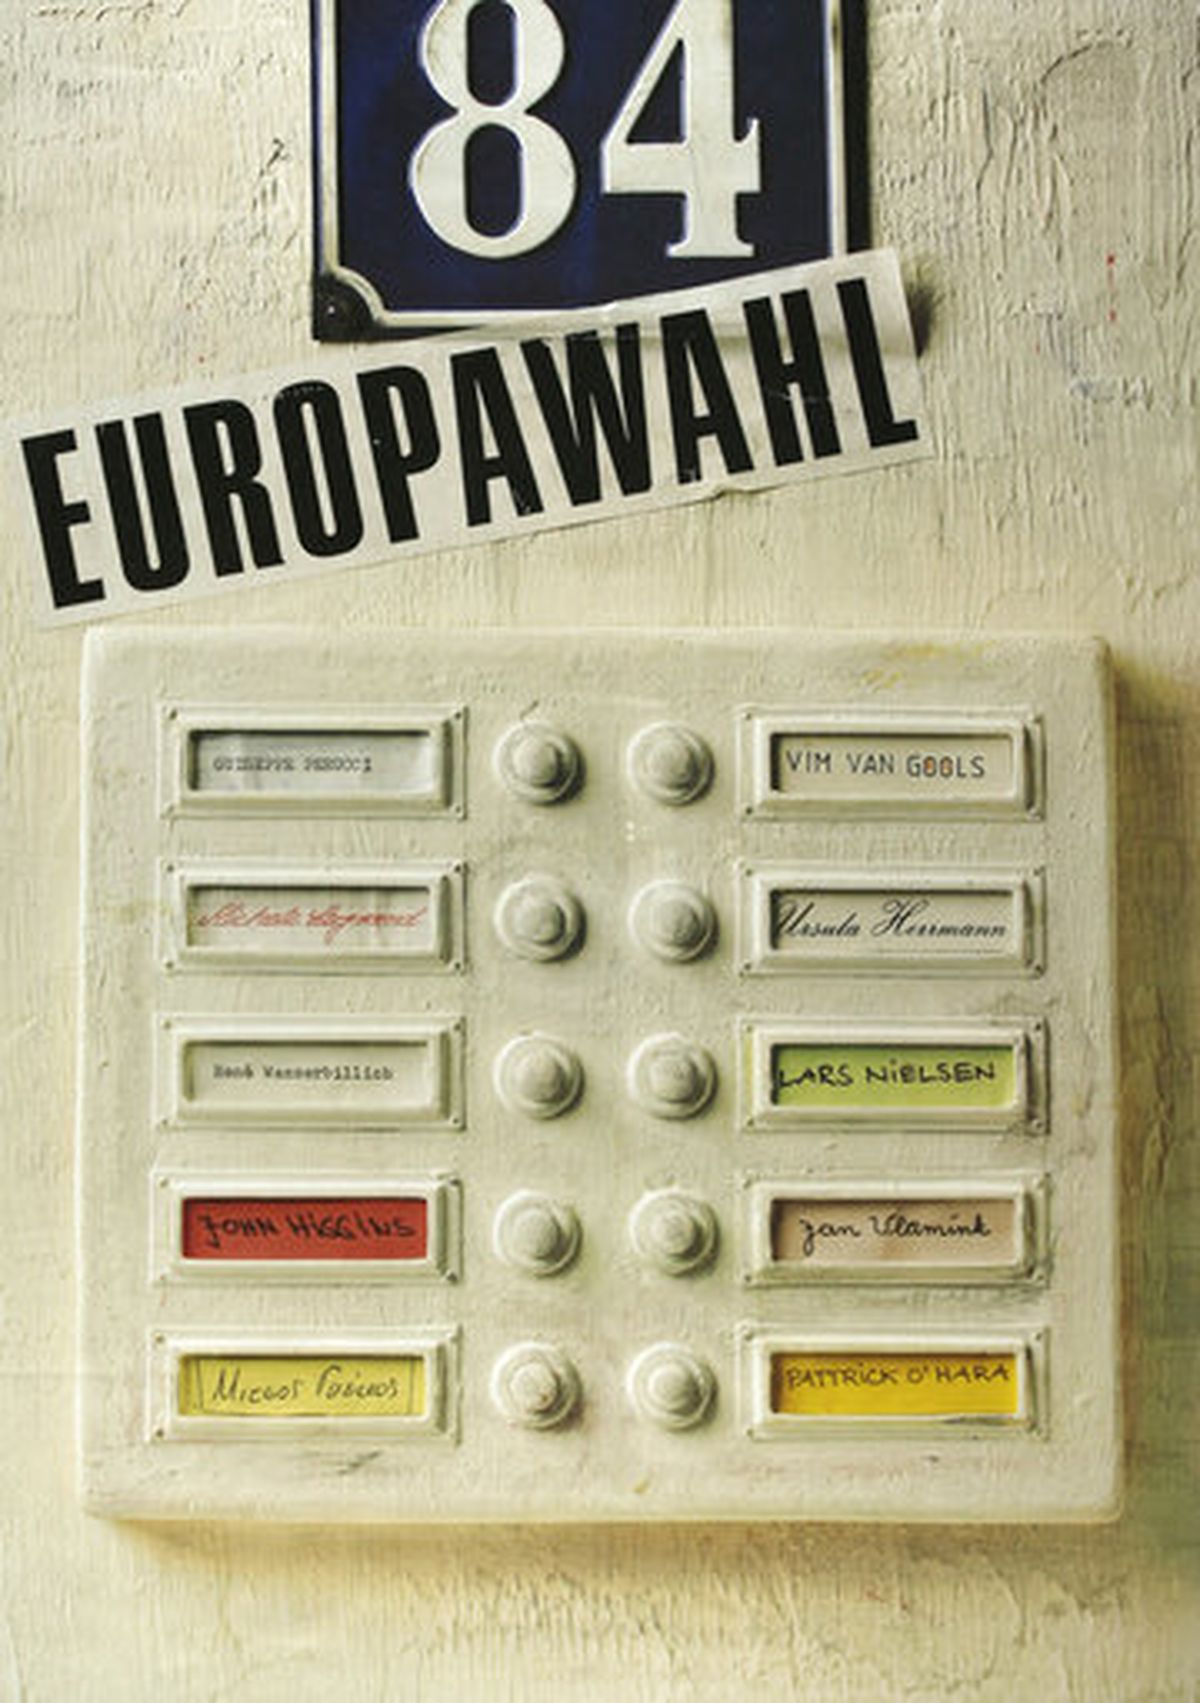 Рекламный плакат, приуроченный к европейским выборам 1984 года в Германии.